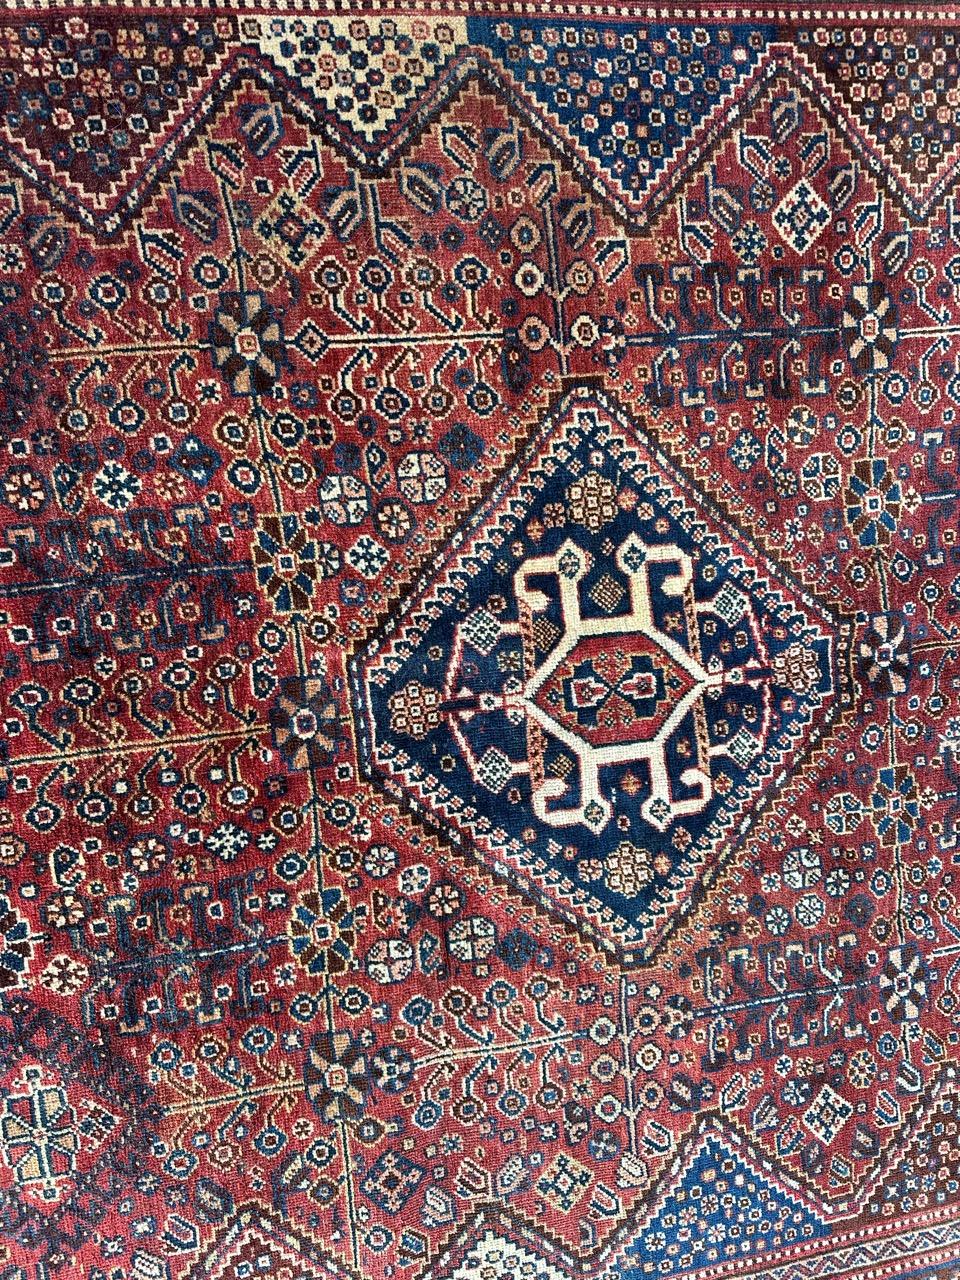 Joli tapis tribal Qashqai du début du 20e siècle avec de beaux motifs géométriques et stylisés et de belles couleurs naturelles, entièrement noué à la main avec de la laine sur une base de laine.

✨✨✨
